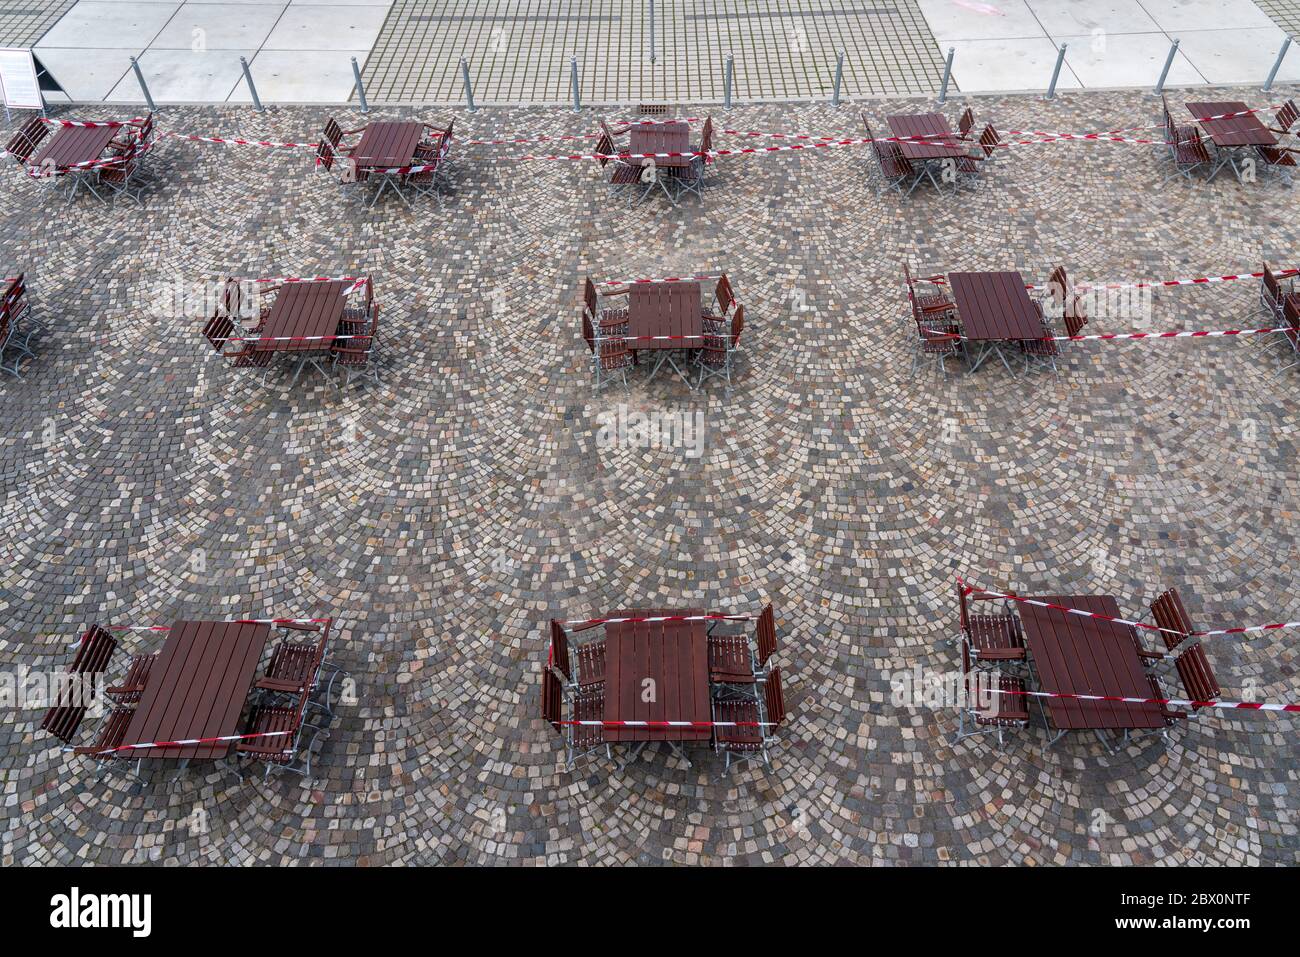 Gastronomia durante la crisi della corona, tavoli chiusi in birreria all'aperto, Essen, zona della Ruhr, NRW, Germania Foto Stock